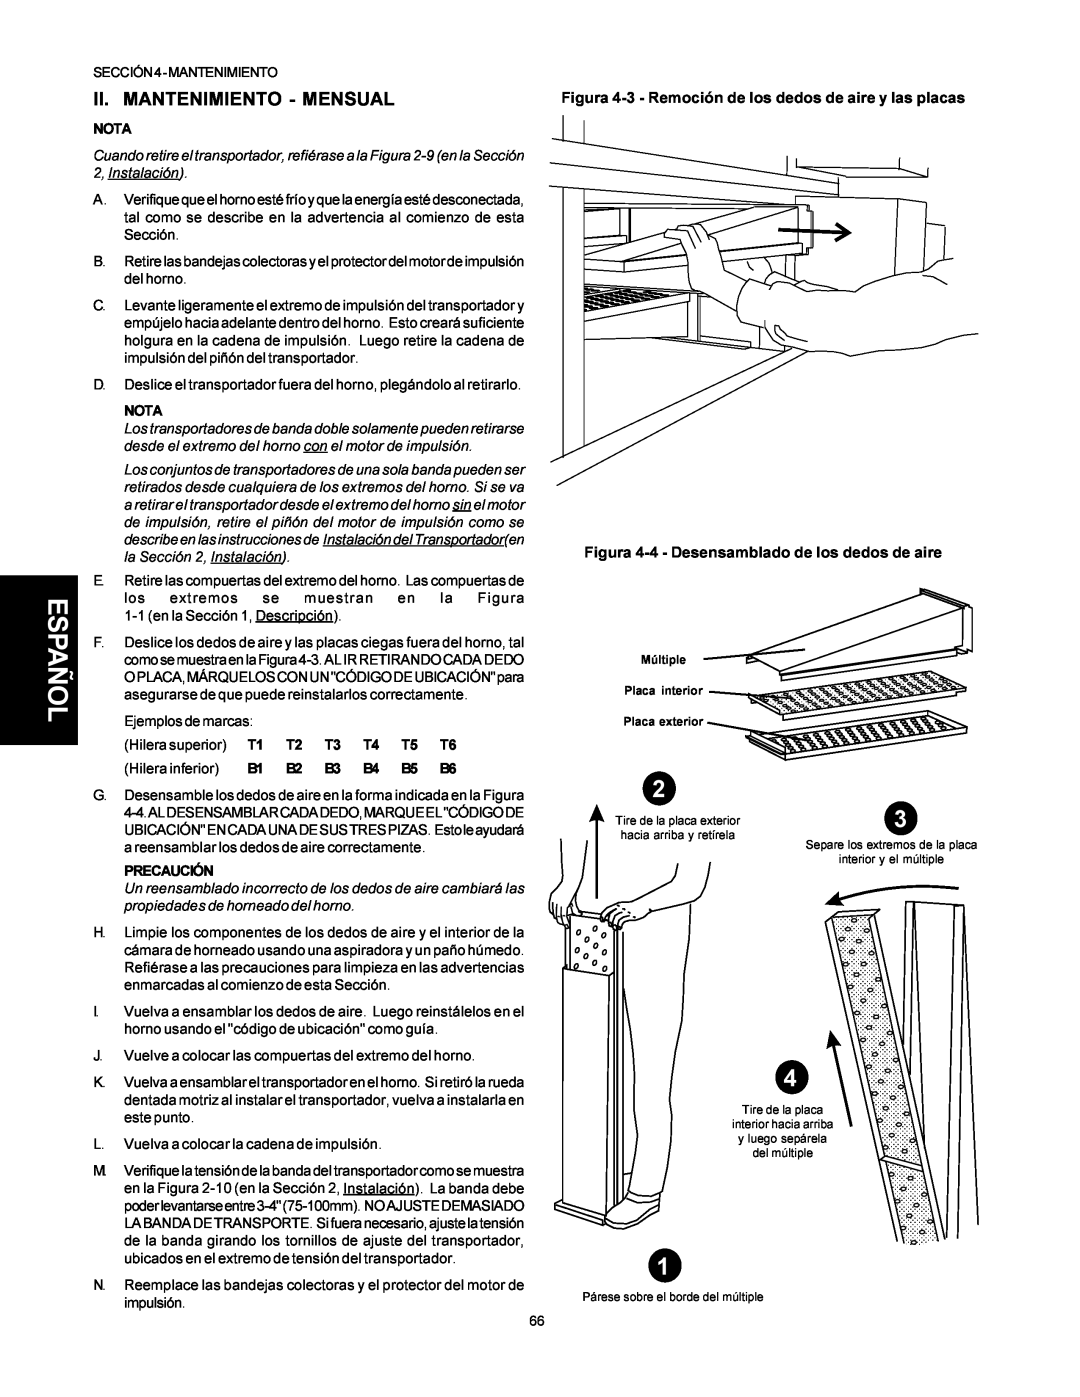 Middleby Marshall PS500 Ii. Mantenimiento - Mensual, Español, Figura 4-3 - Remoción de los dedos de aire y las placas 